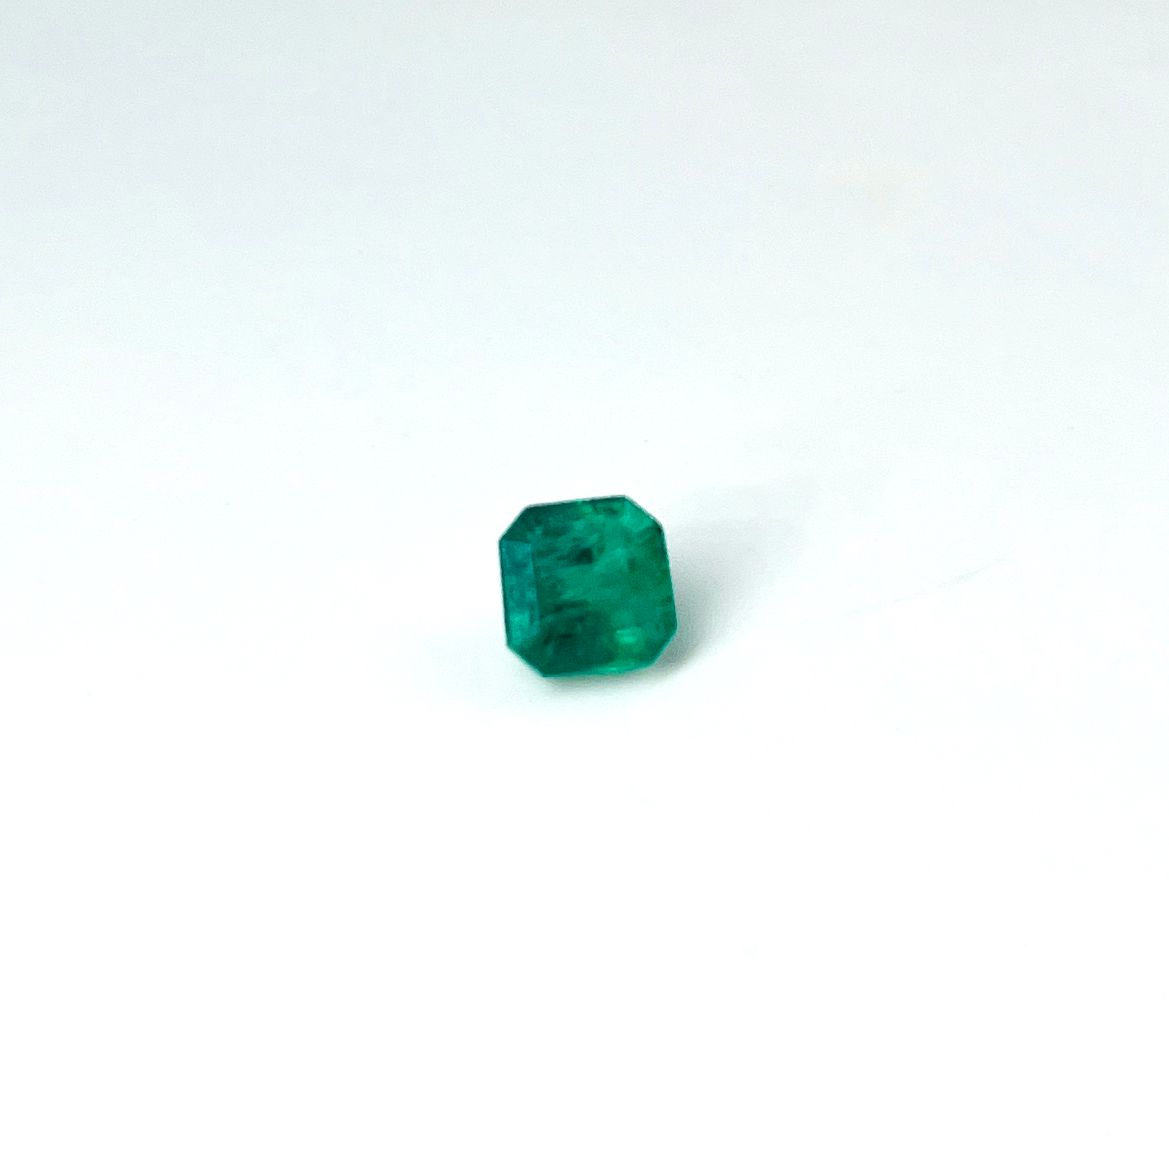 Null 方形切割的祖母绿，重1.96克拉（碎片），附有AIG证书，说明 "鲜绿色""CEE（O）小号"。